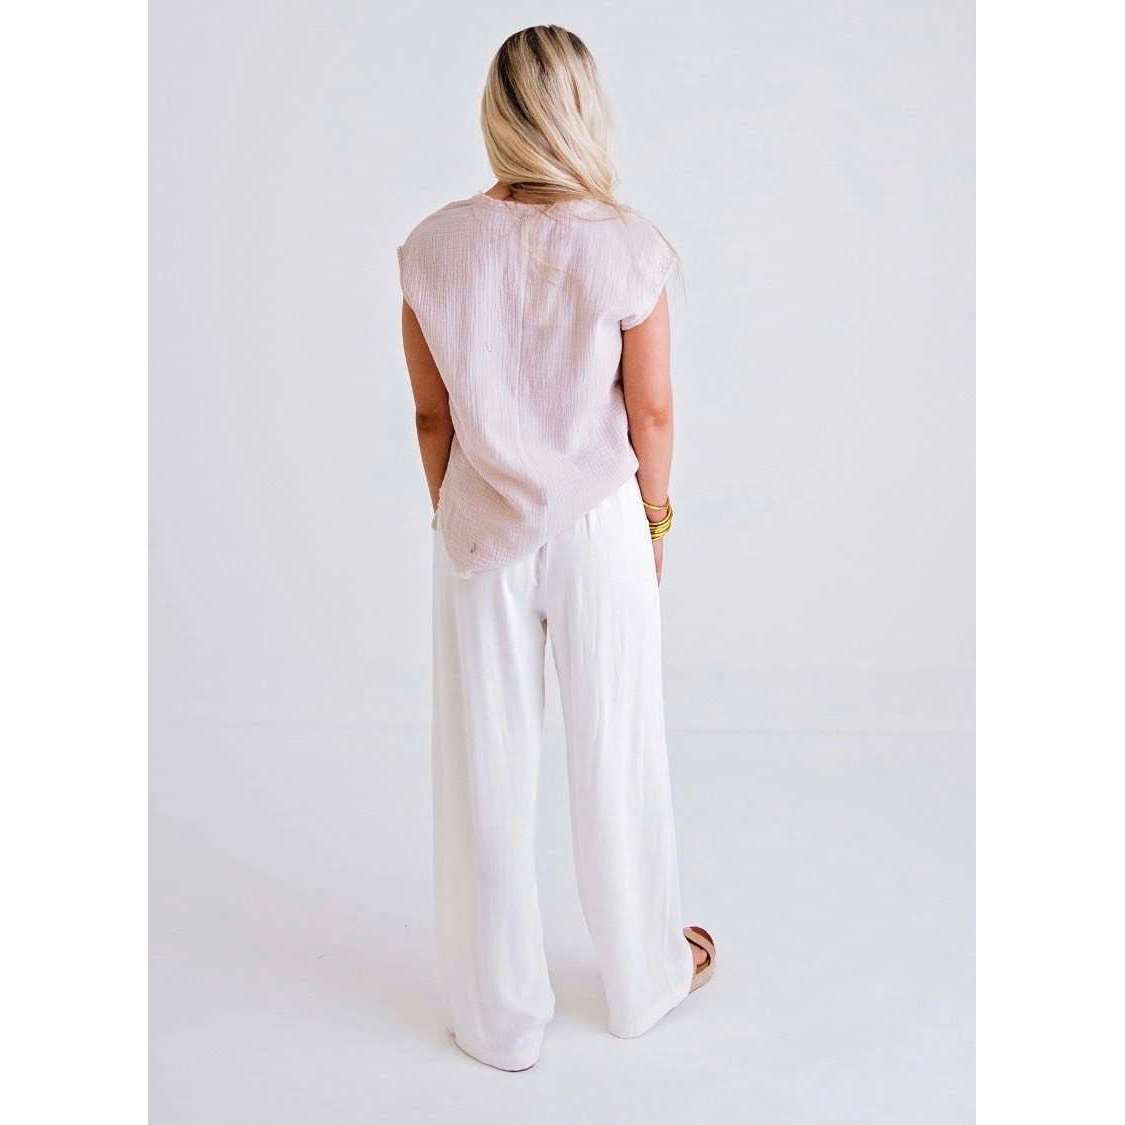 8.28 Boutique:Karlie Clothes,Karlie Clothes White Linen Gauze Drawstring Pant,Bottoms